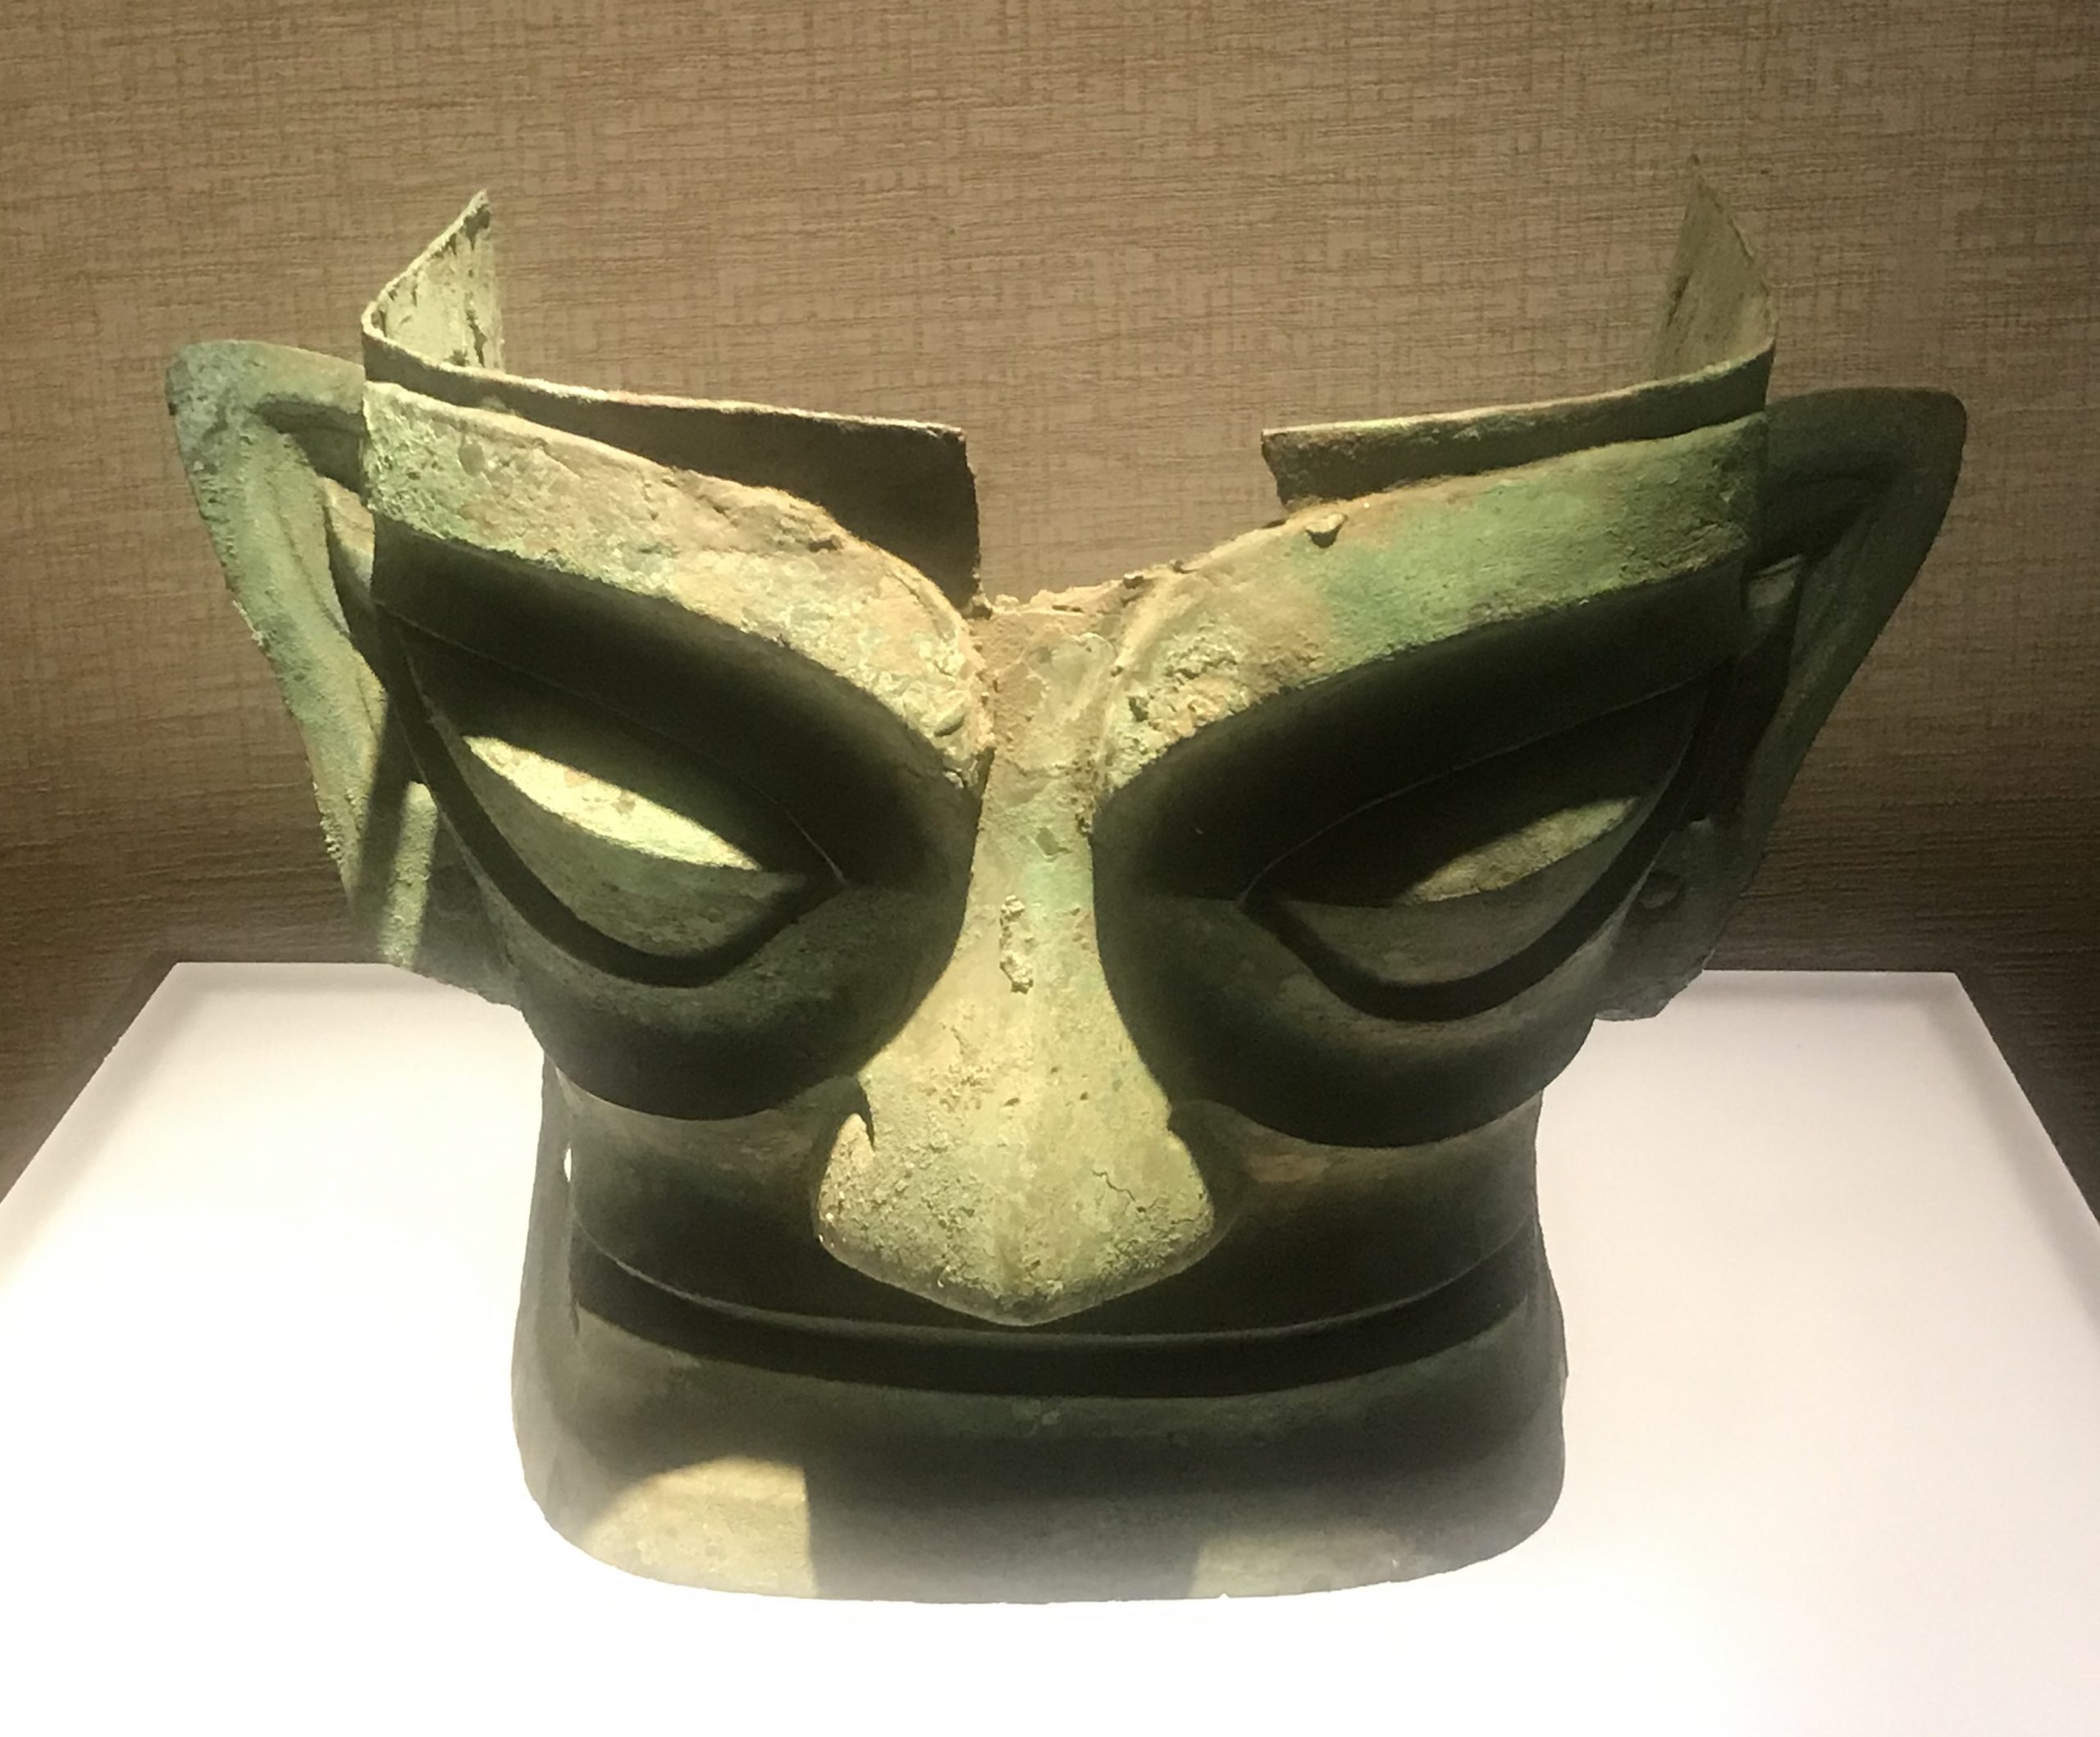  青銅人面具１-青銅器館-三星堆博物館-広漢市-徳陽市-四川省